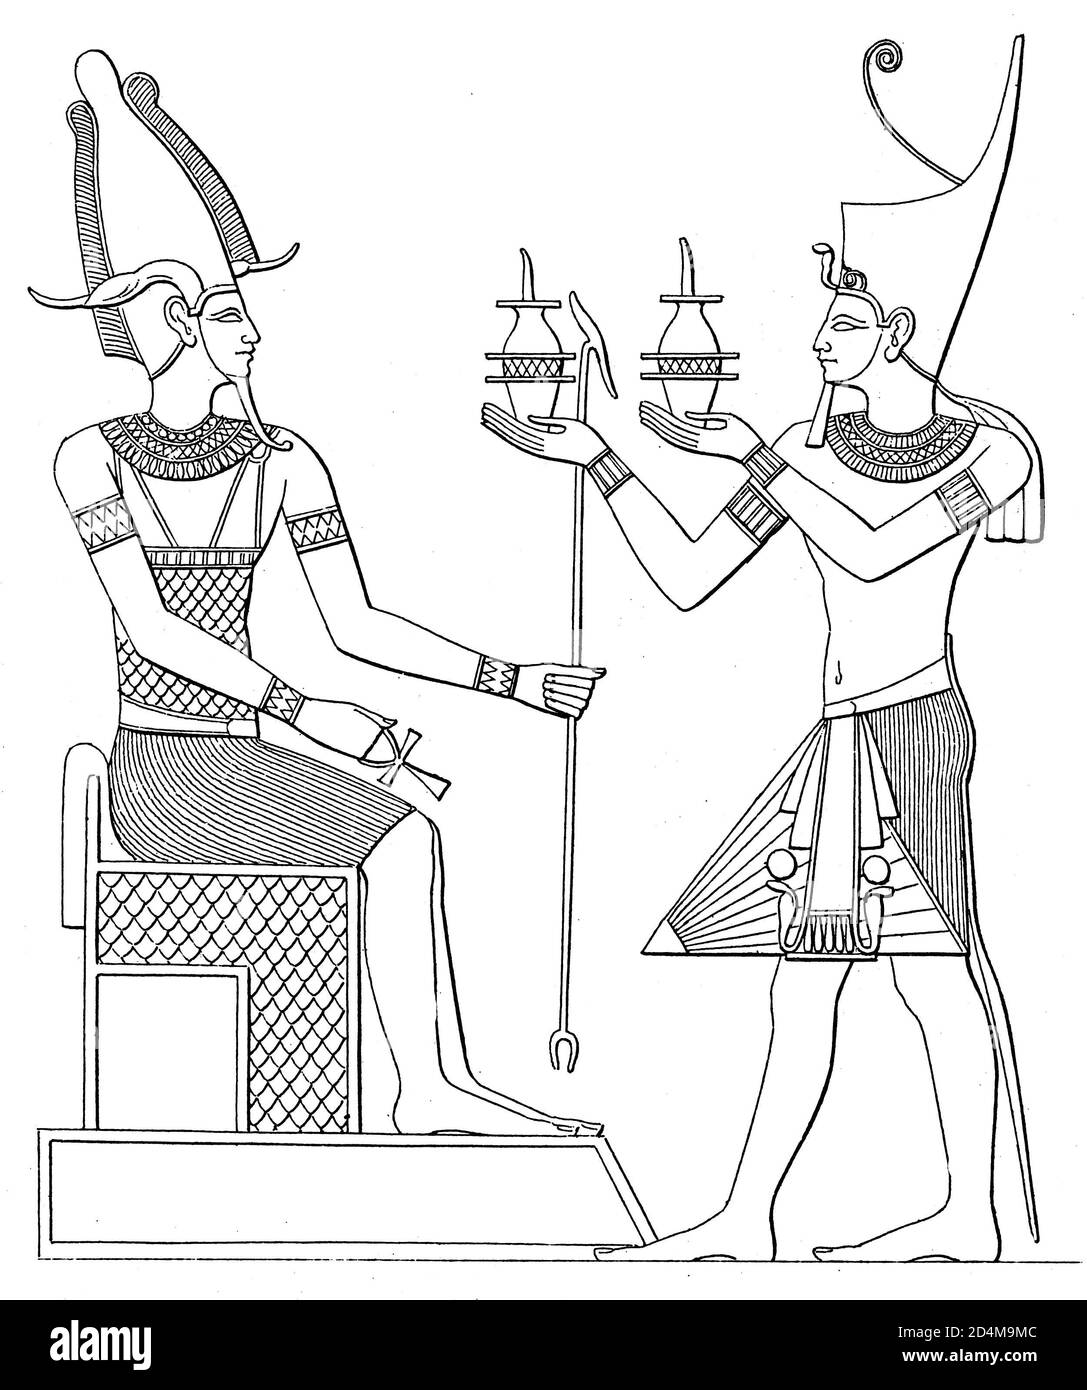 Фараон на троне гравюра